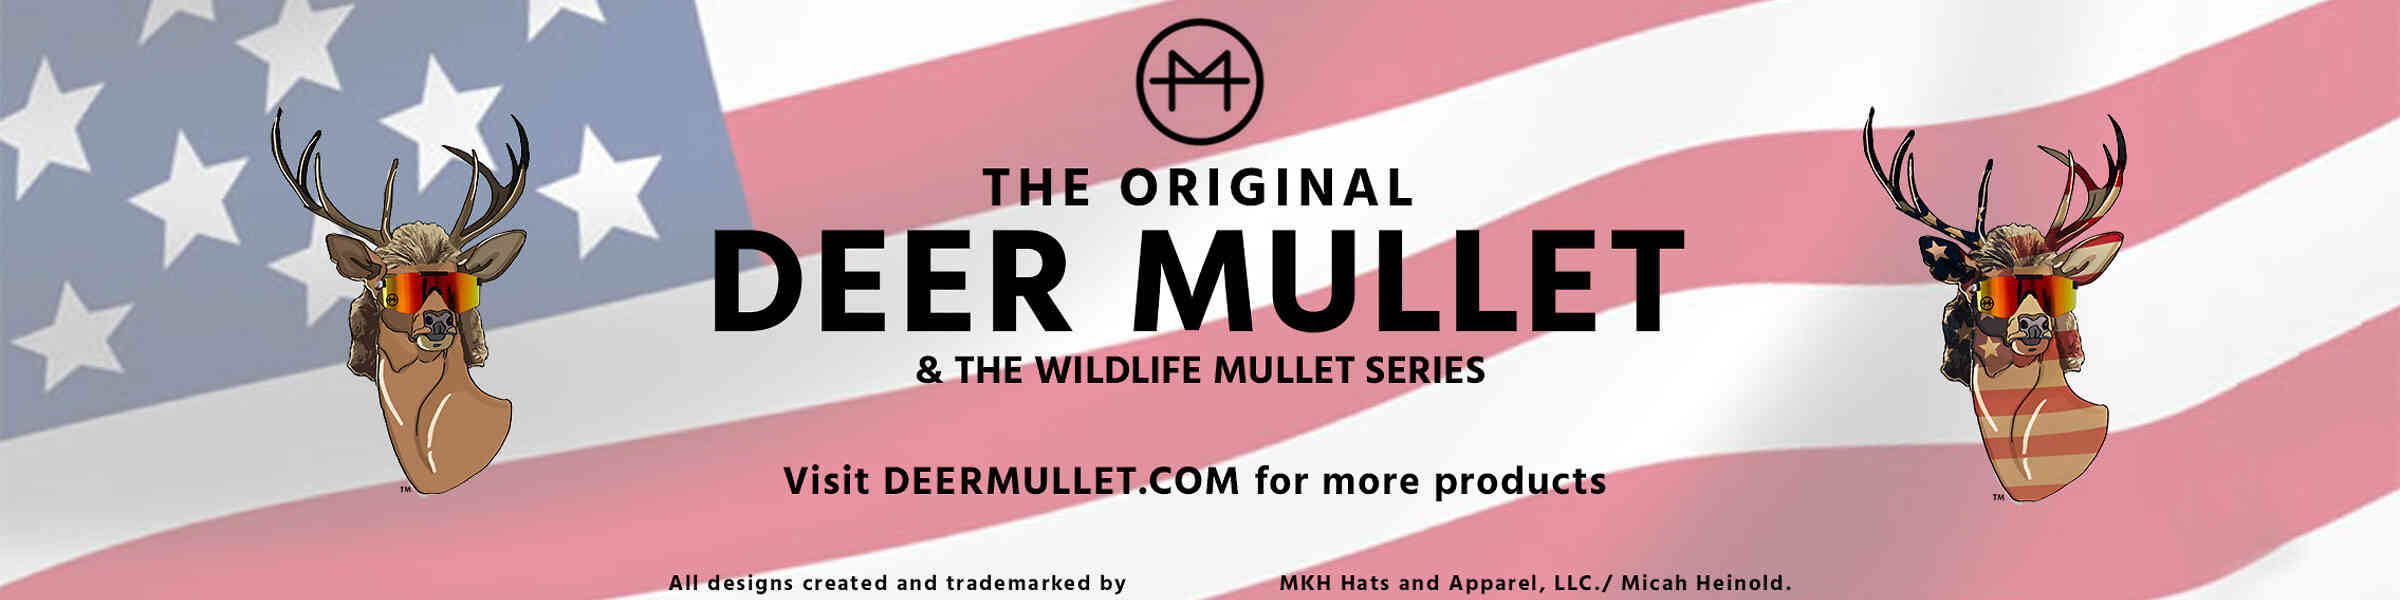 A newly designed Deer Mullet  The Original Deer Mullet  Facebook